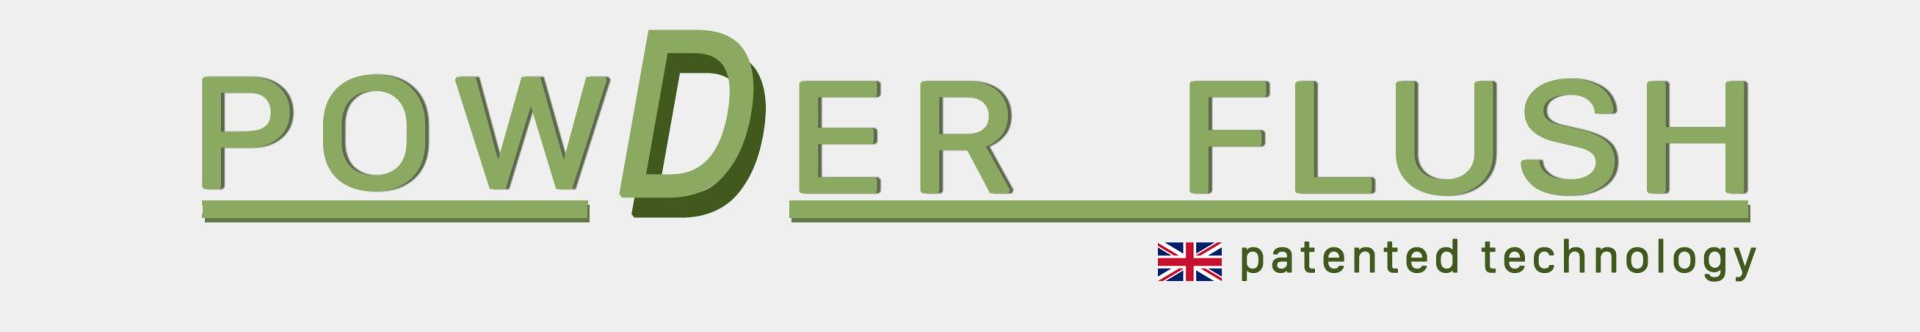 PowDer Flush logo 2